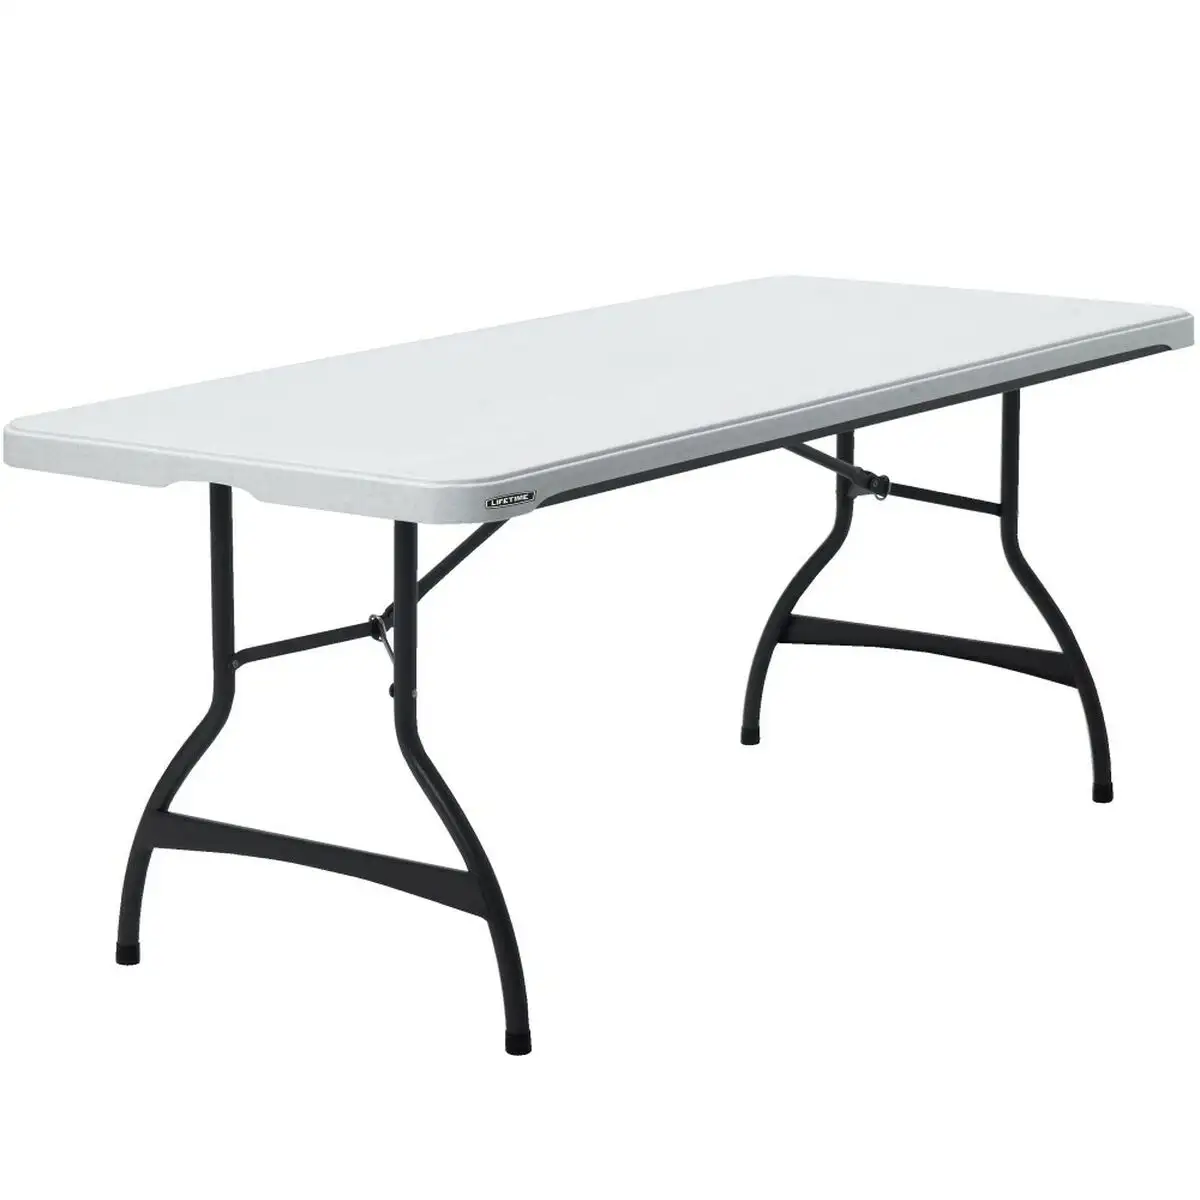 Table piable lifetime blanc acier plastique 182 x 73 5 x 76 cm_3282. DIAYTAR SENEGAL - L'Art de Choisir, l'Art de Vivre. Parcourez notre boutique en ligne et choisissez parmi des produits de qualité qui ajoutent de l'élégance à votre quotidien.